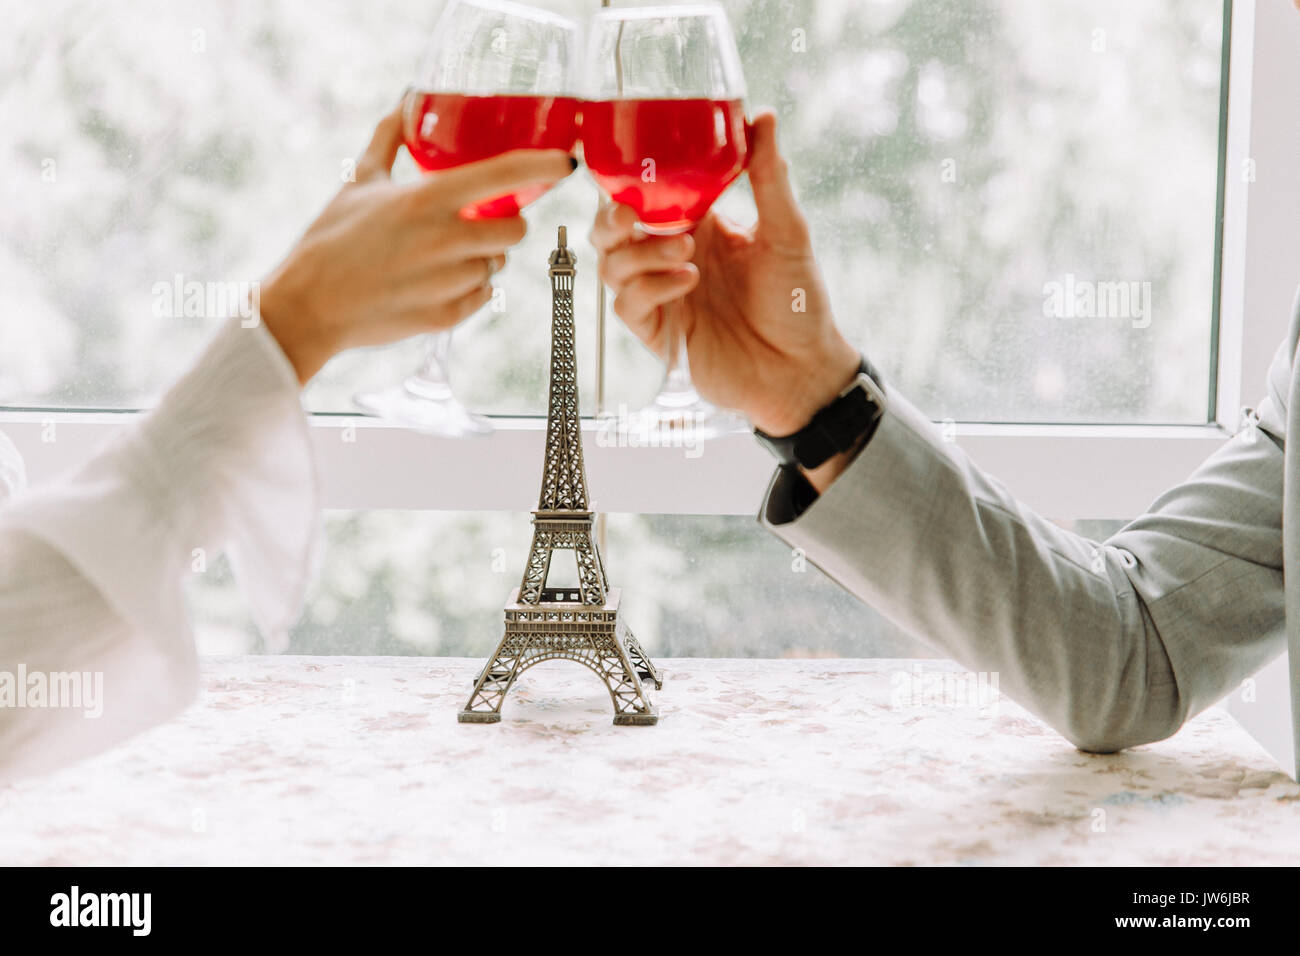 Deux personnes le grillage avec des verres à vin. jeune couple drinking red wine at restaurant Banque D'Images